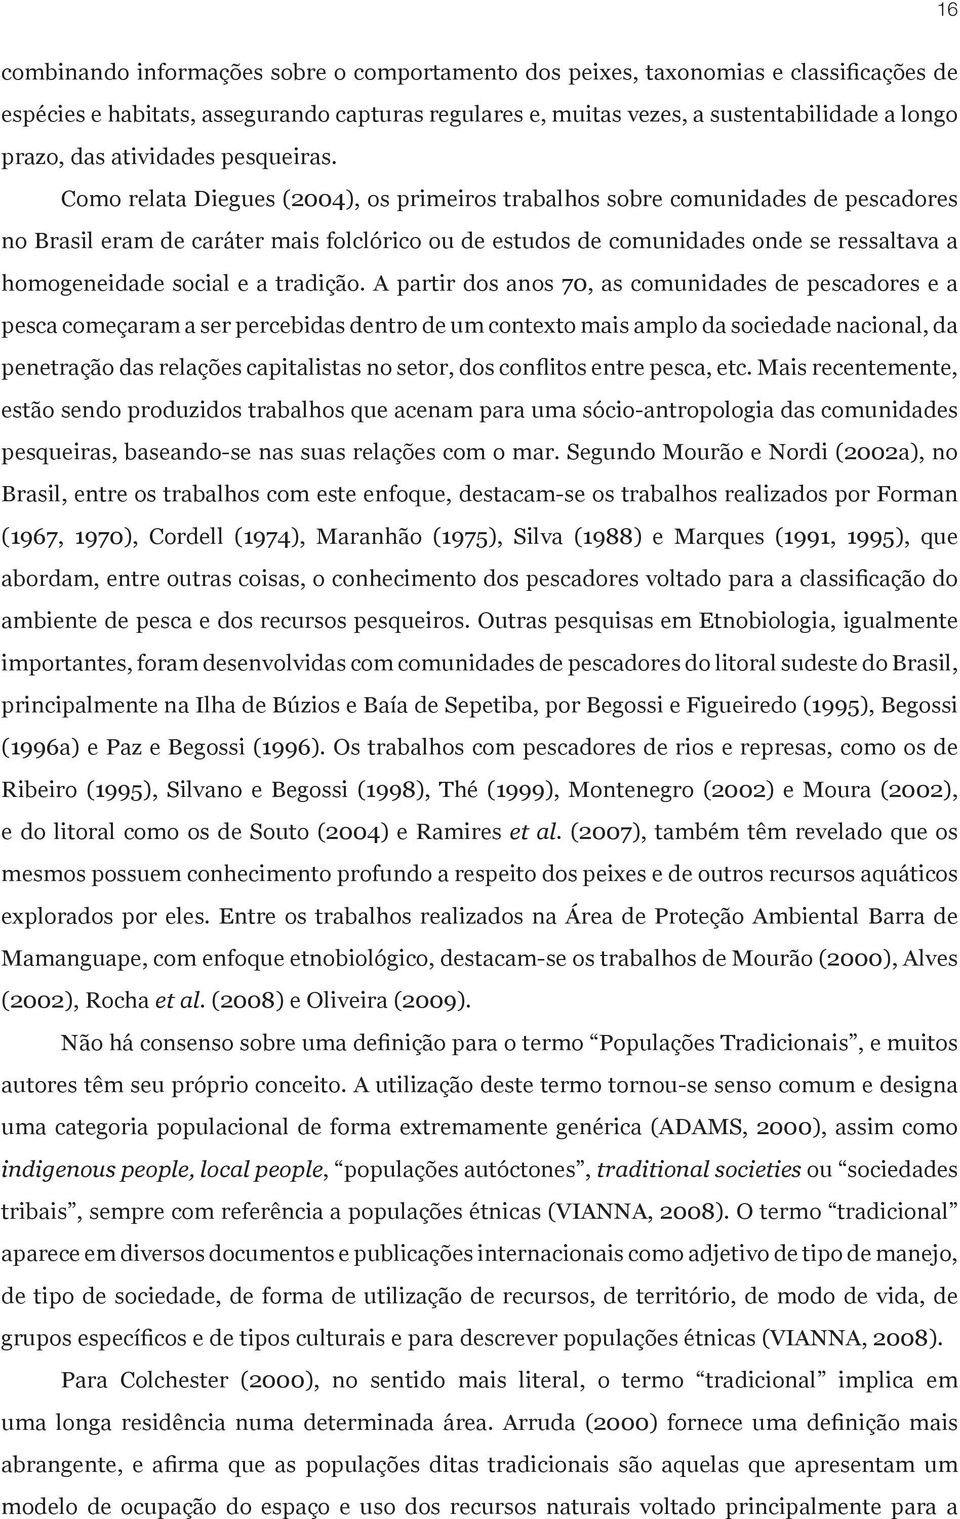 Como relata Diegues (2004), os primeiros trabalhos sobre comunidades de pescadores no Brasil eram de caráter mais folclórico ou de estudos de comunidades onde se ressaltava a homogeneidade social e a